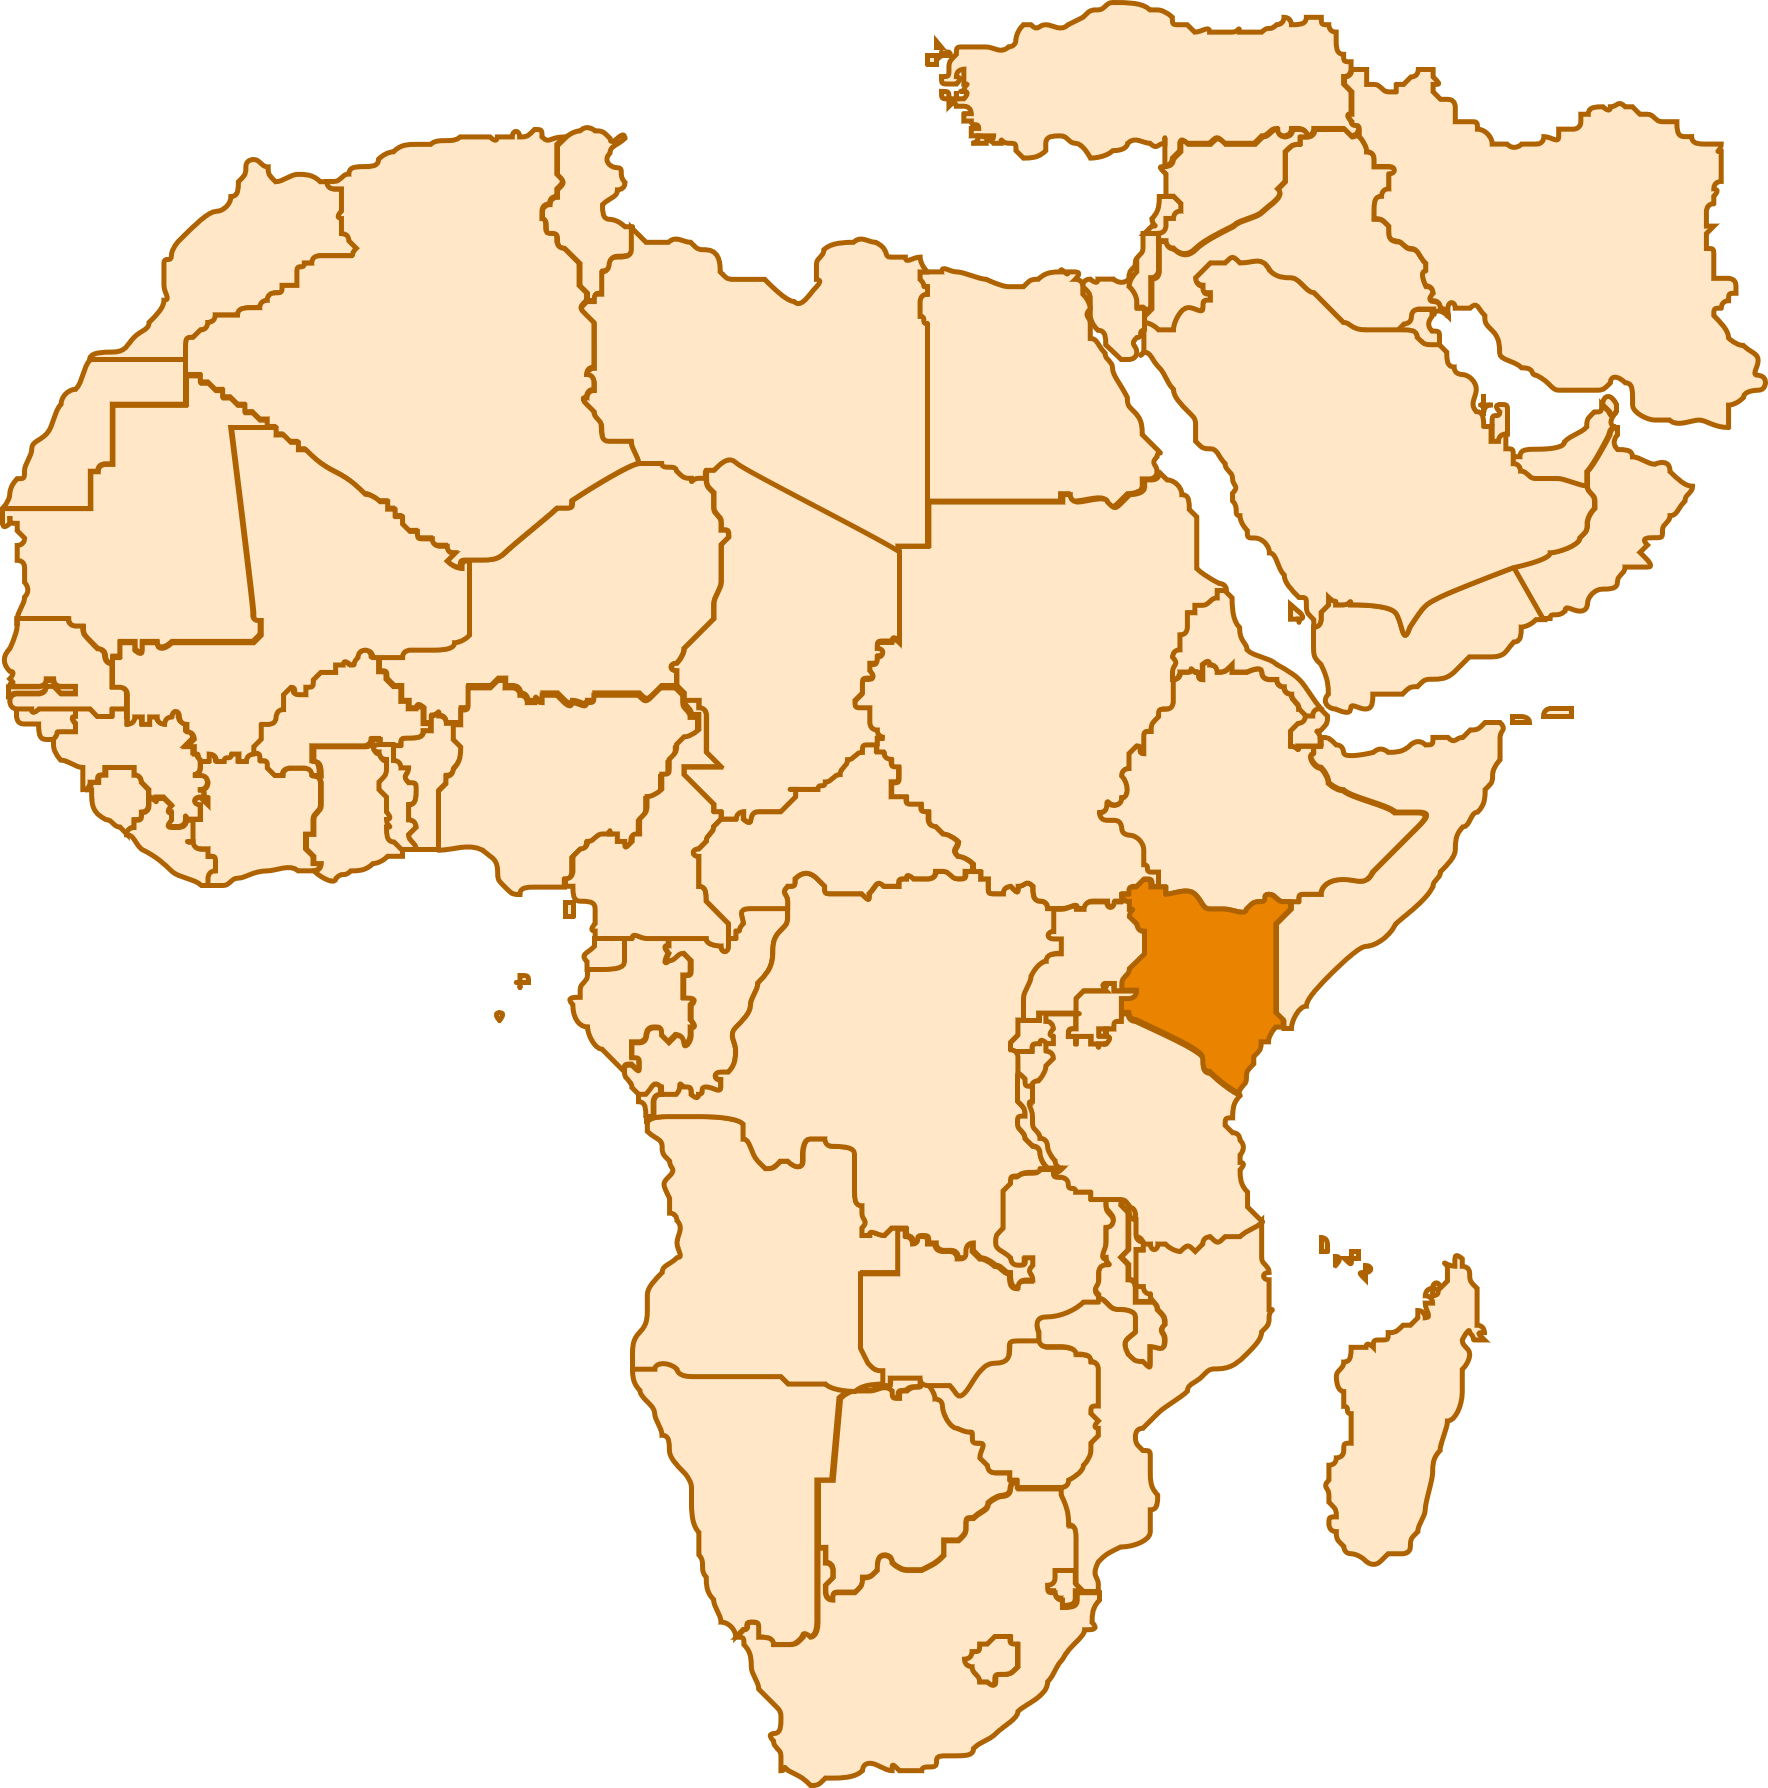 Middle East & Africa, Kenya